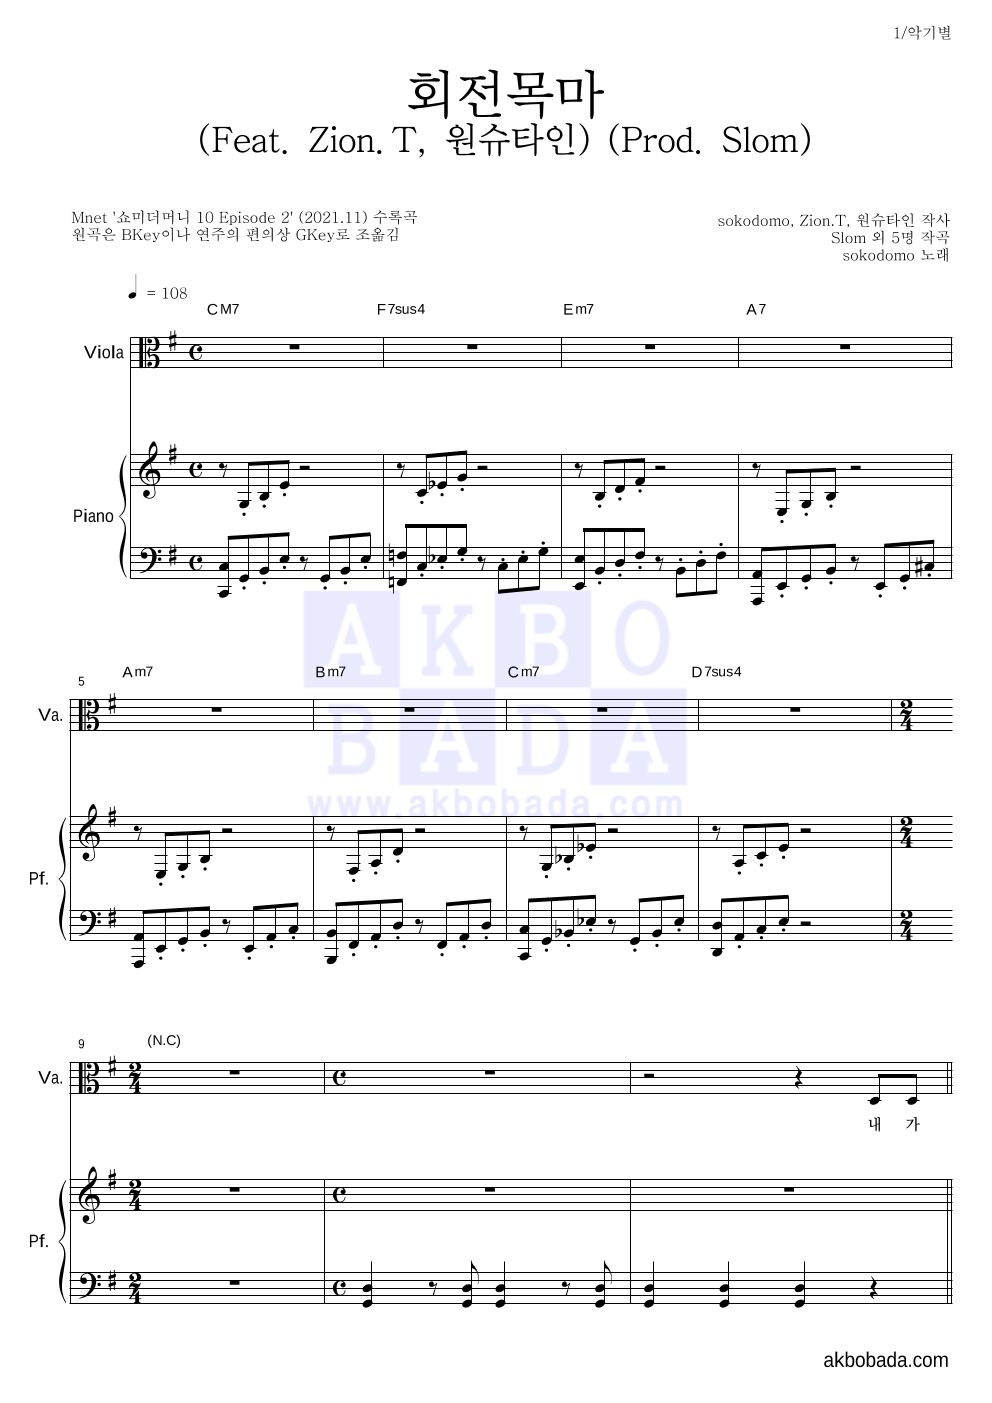 sokodomo - 회전목마 (Feat. Zion.T, 원슈타인) (Prod. Slom) 비올라&피아노 악보 